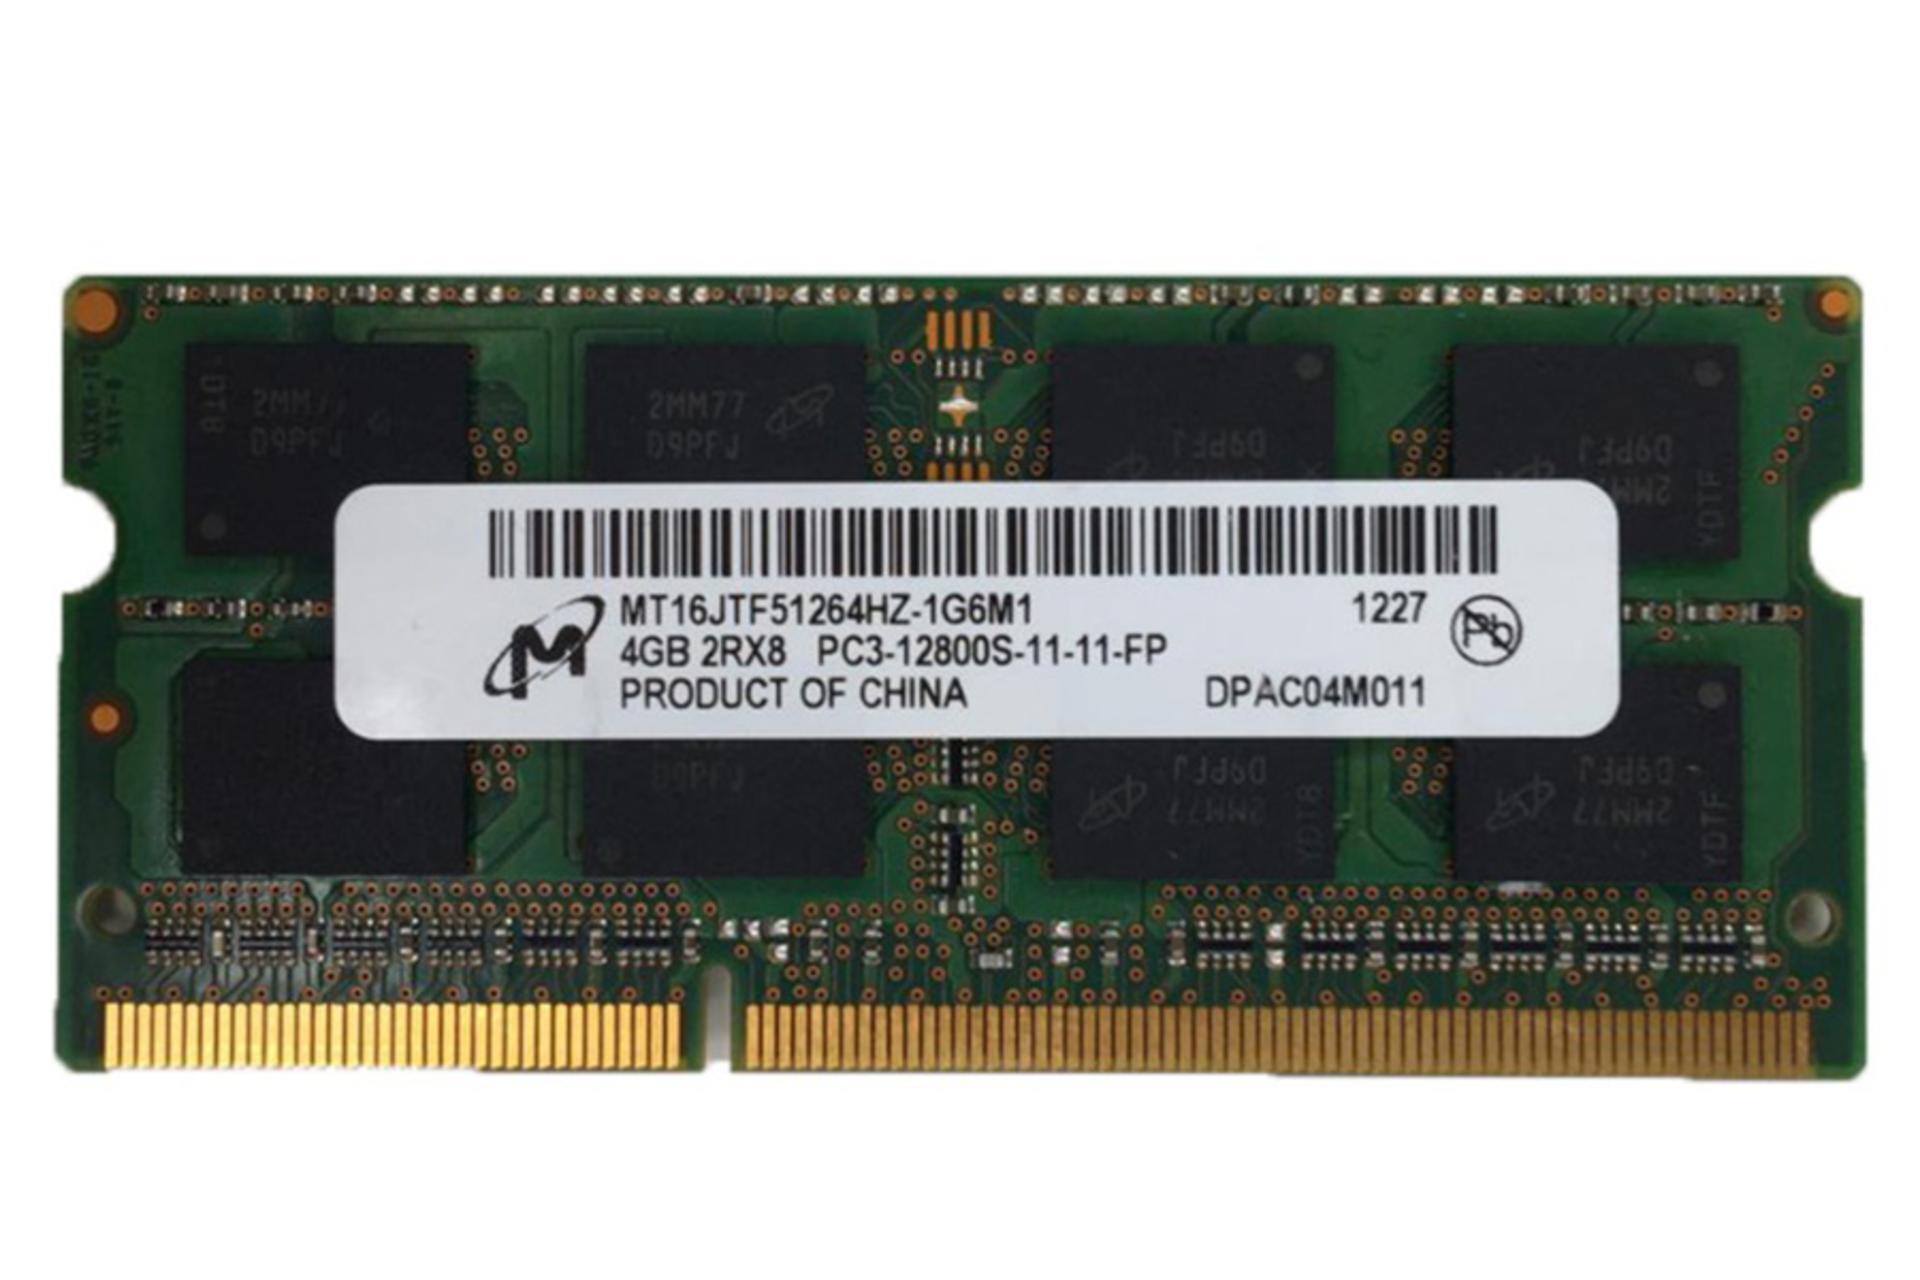 نمای جلوی رم مایکرون MT16JTF51264HZ-1G6M1 ظرفیت 4 گیگابایت از نوع DDR3-1600